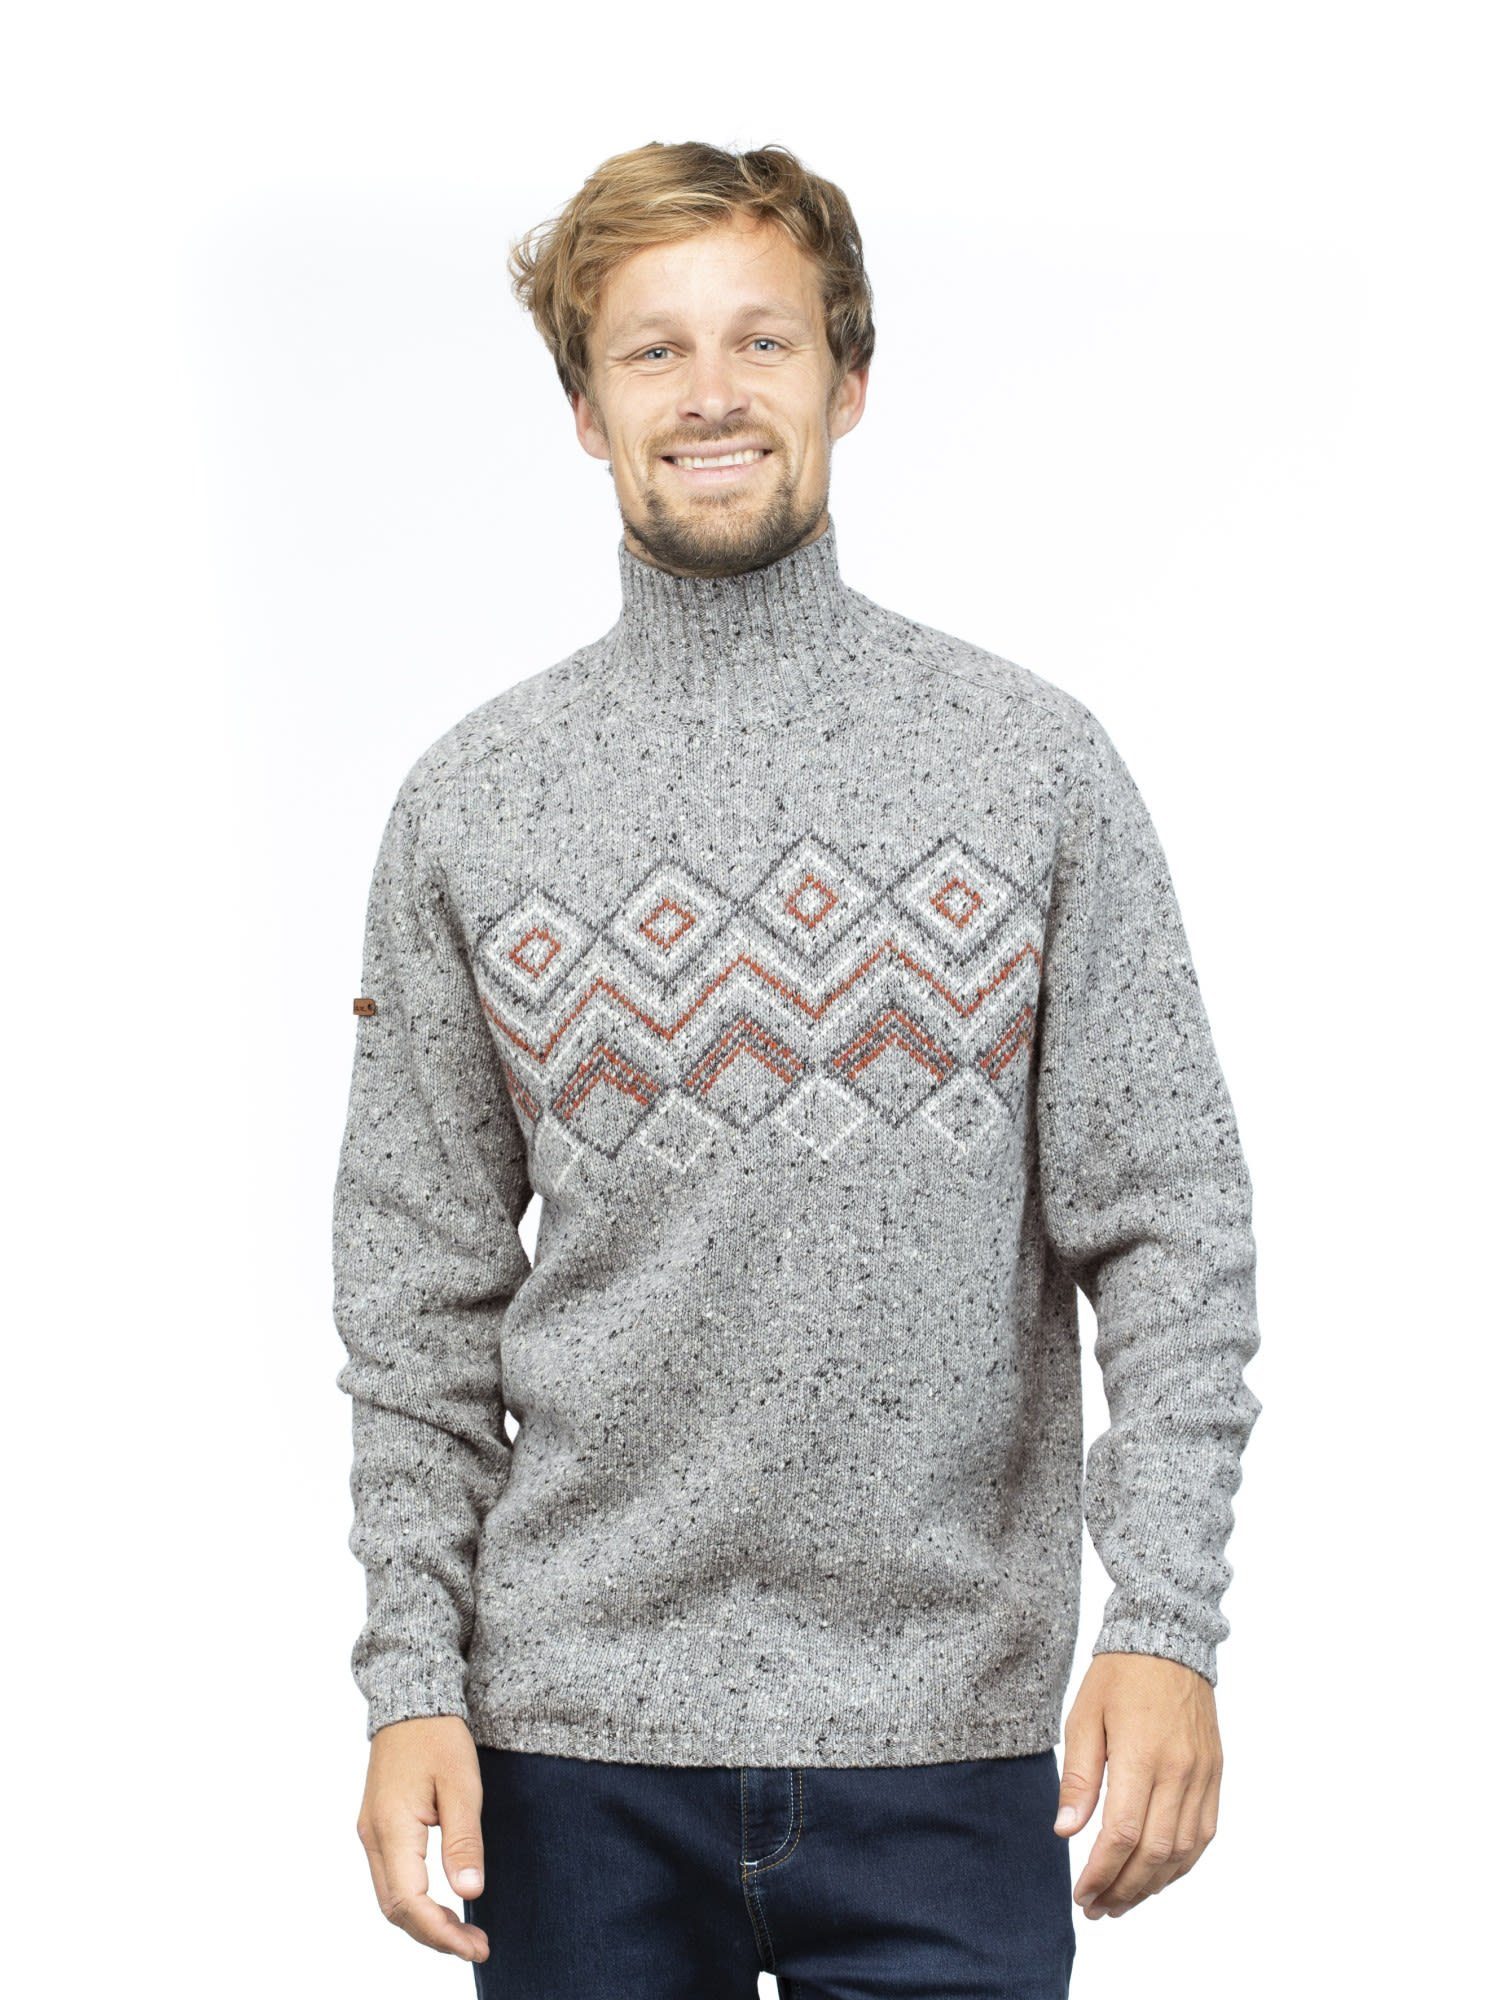 Grey M Chillaz Sweater Chillaz Fleecepullover Melange Herren Selfoss